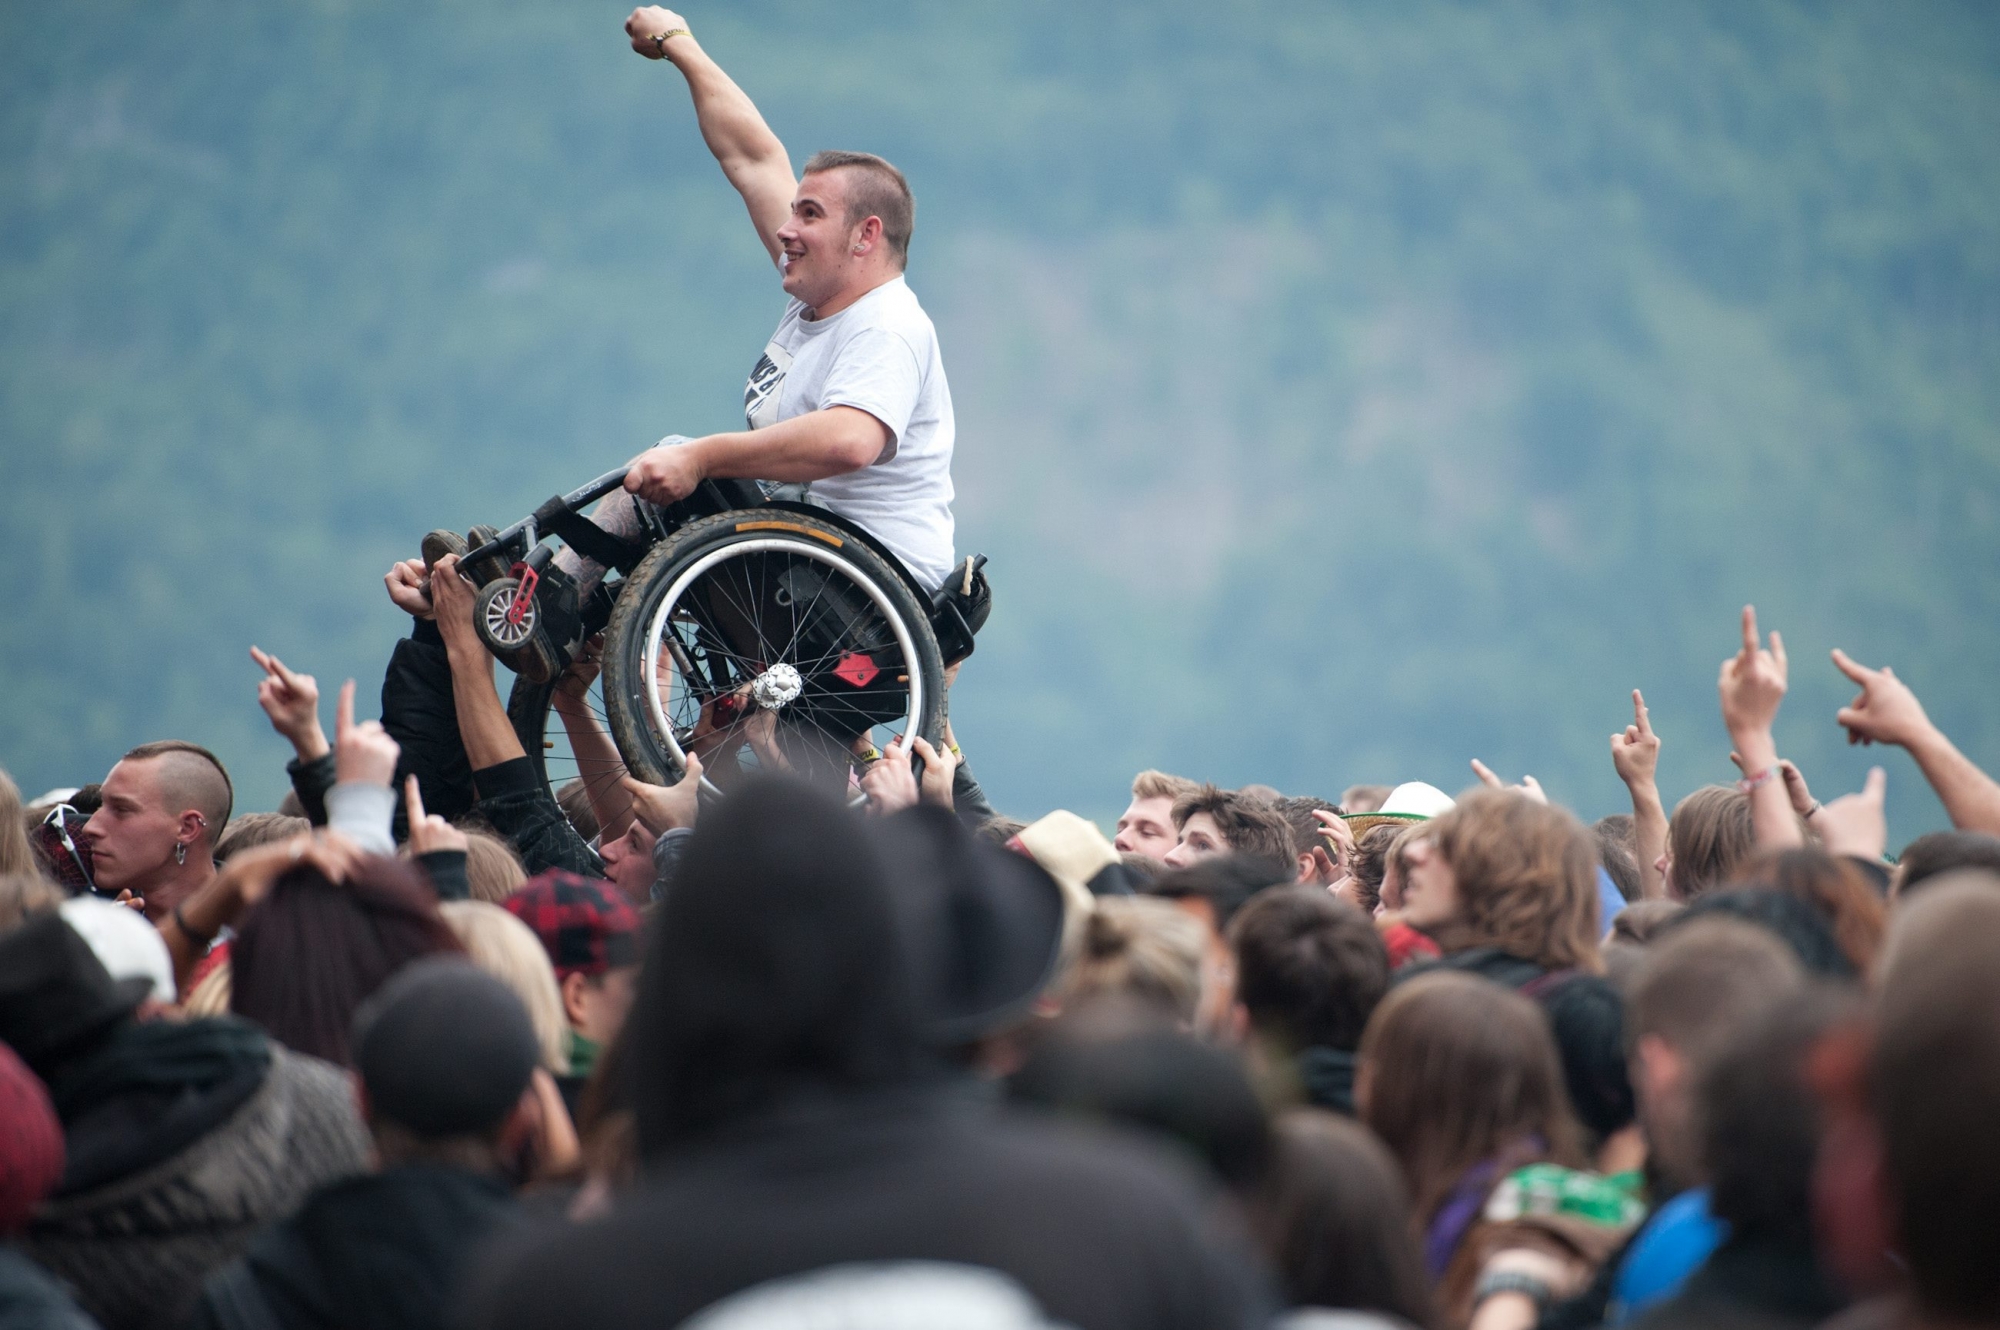 Ein Festivalbesucher im Rollstuhl wird von der Menschenmasse waehrend des Konzerts der Band "Flogging Molly" getragen, am Donnerstag, 9. Juni 2011, am Greenfield Festival in Interlaken. (KEYSTONE/Samuel Truempy)